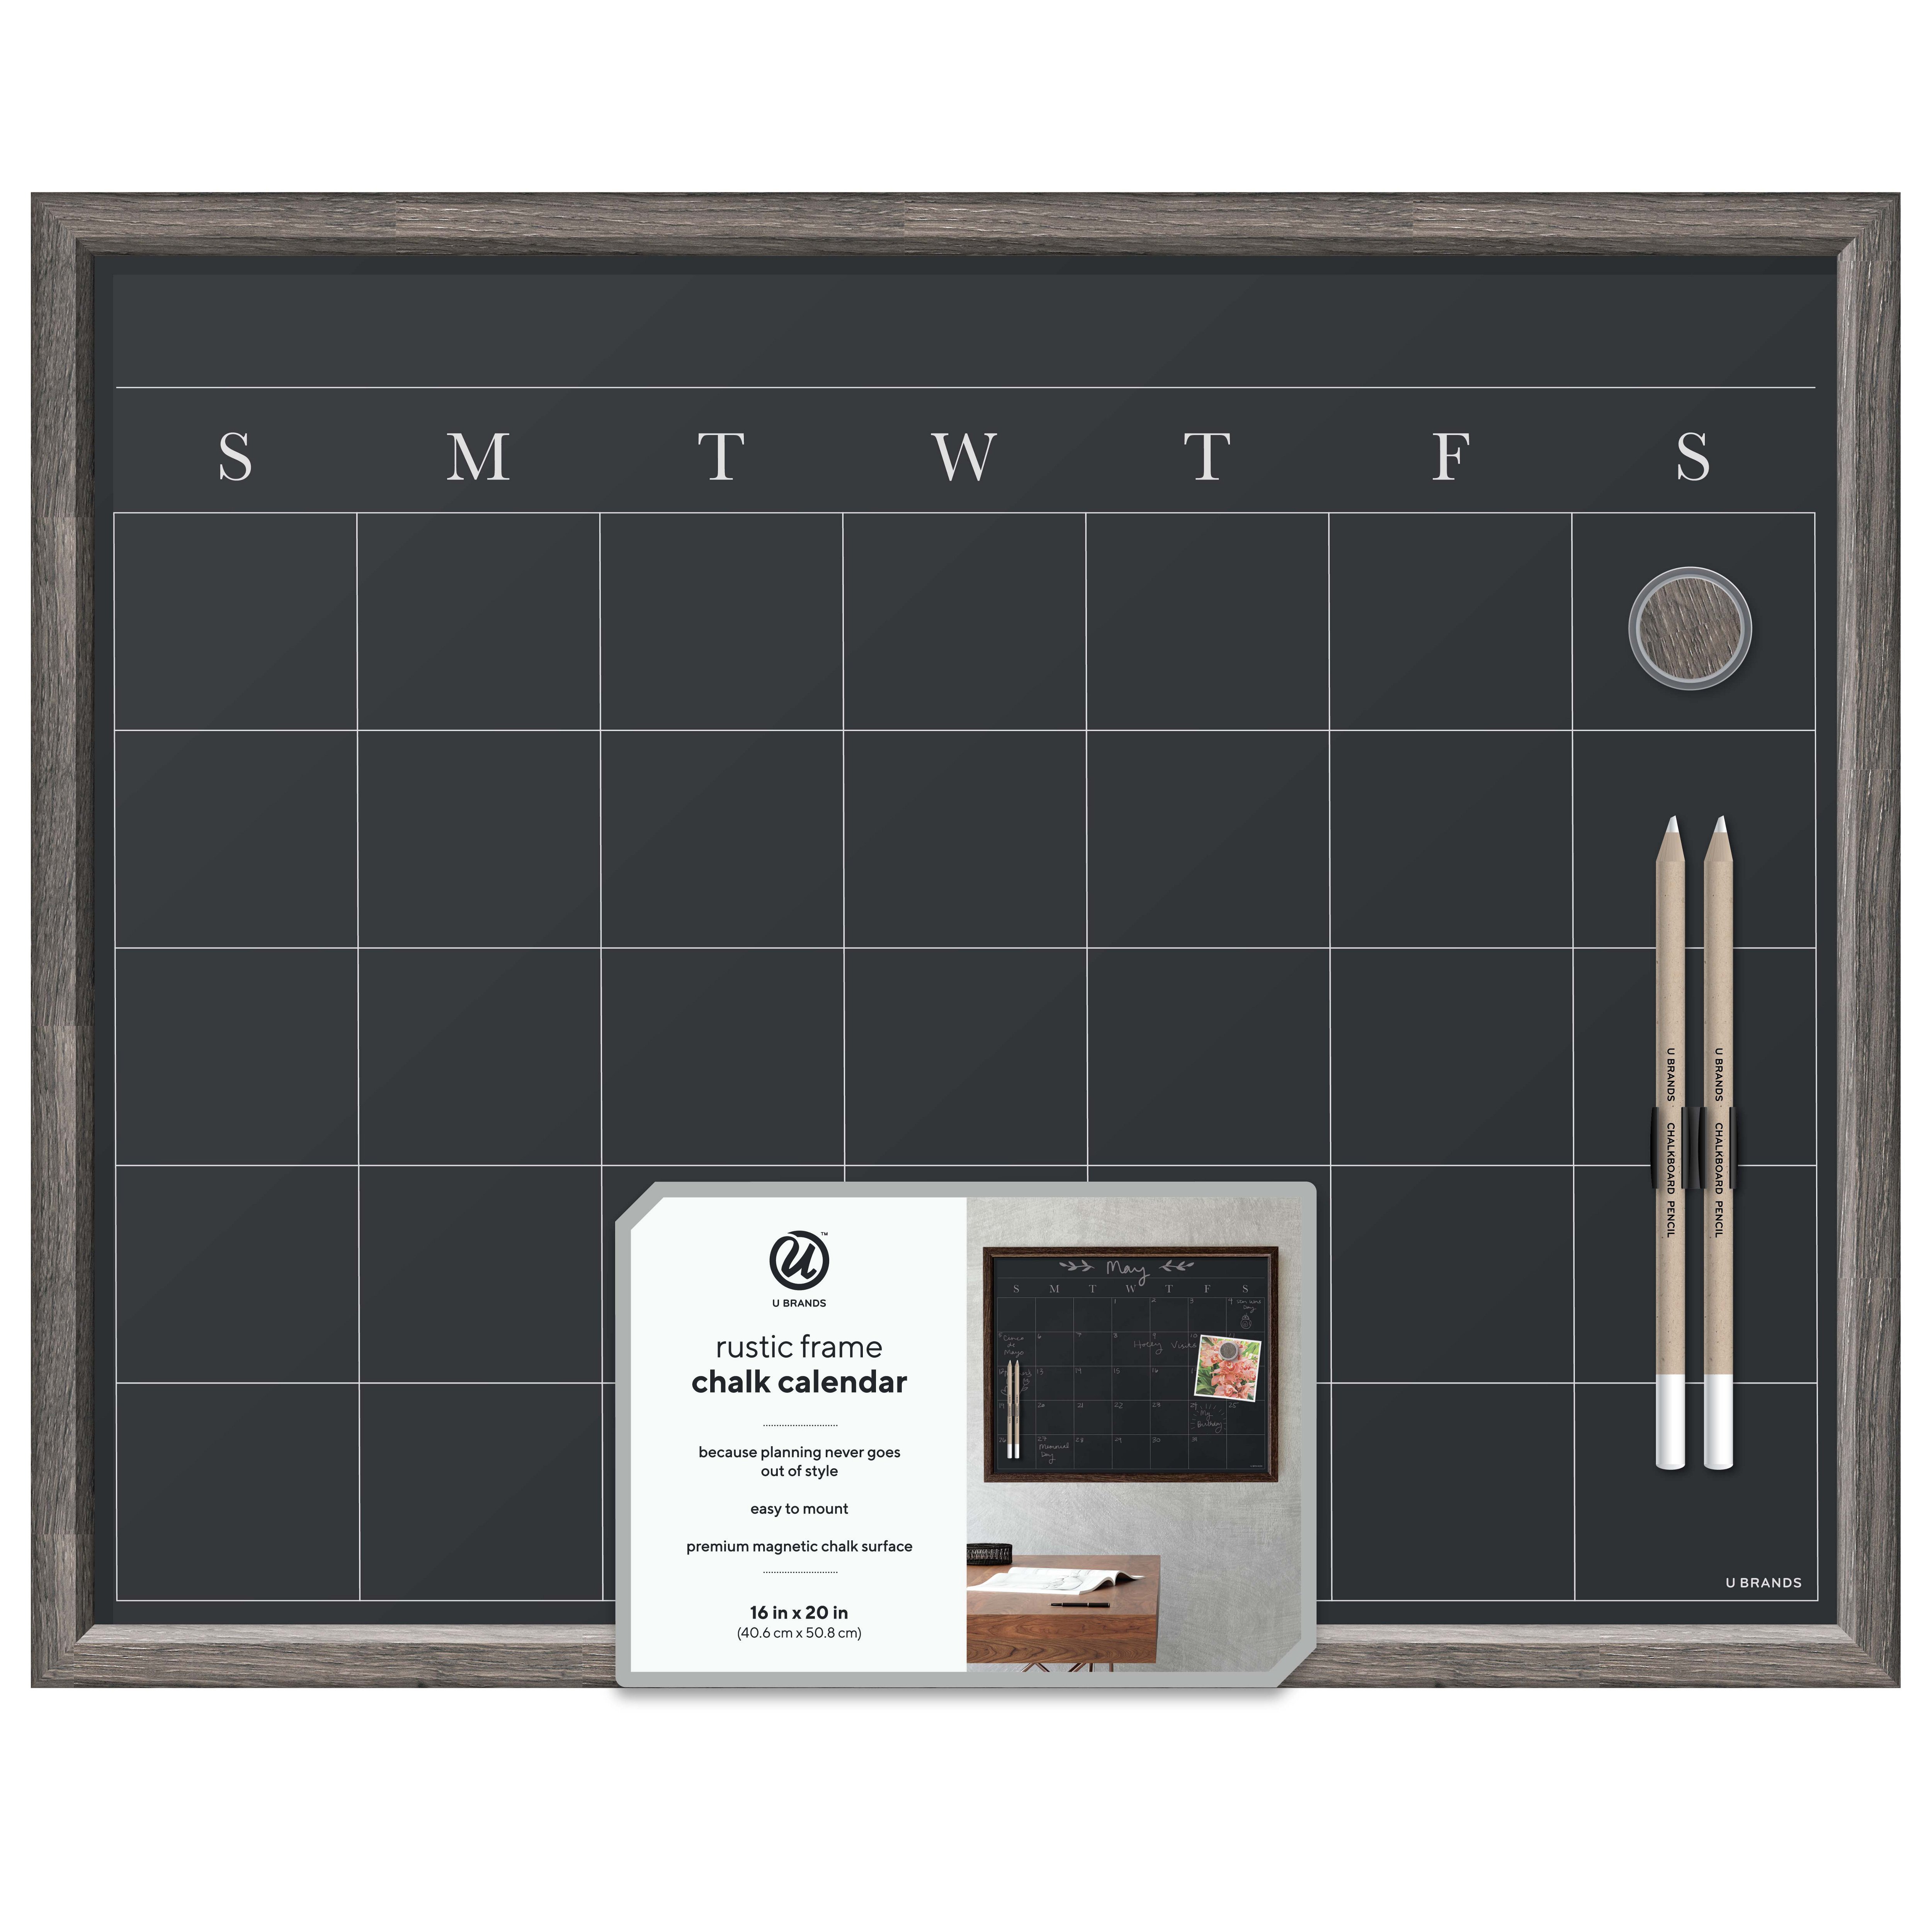 U Brands Magnetic Chalkboard Calendar with Rustic MDF Frame